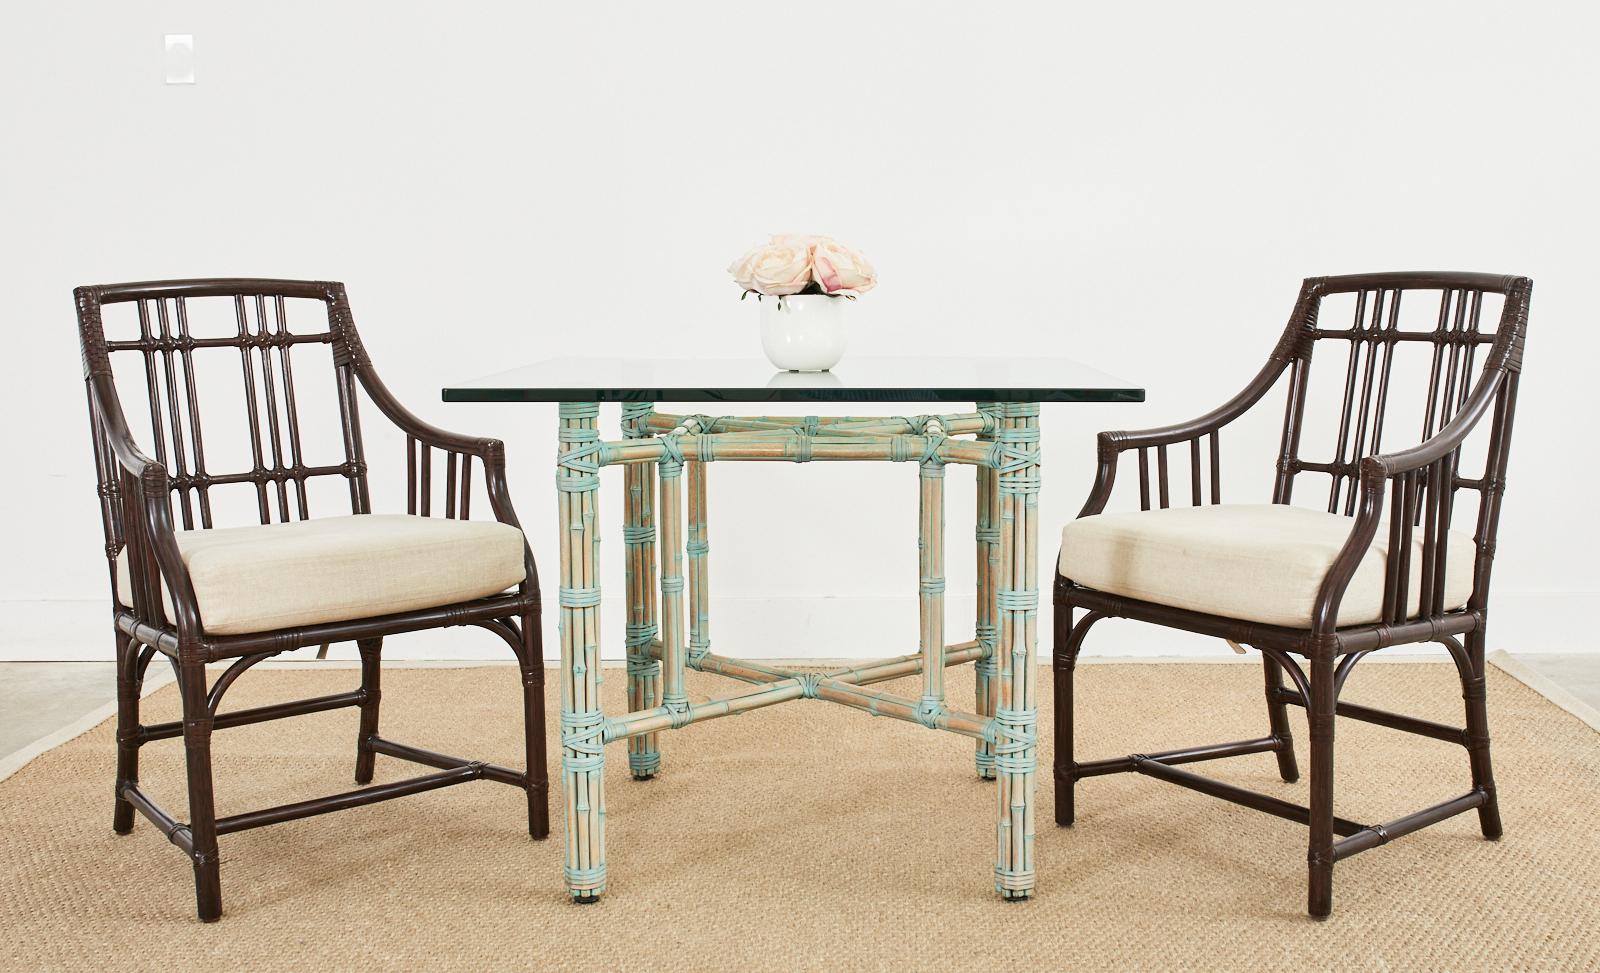 Véritable table à manger en rotin de bambou McGuire, fabriquée dans le style moderne organique californien. La table présente une finition glacée rare, faite sur mesure, avec une patine verte verdigris. Fabriqué à partir d'un cadre en fer peint en